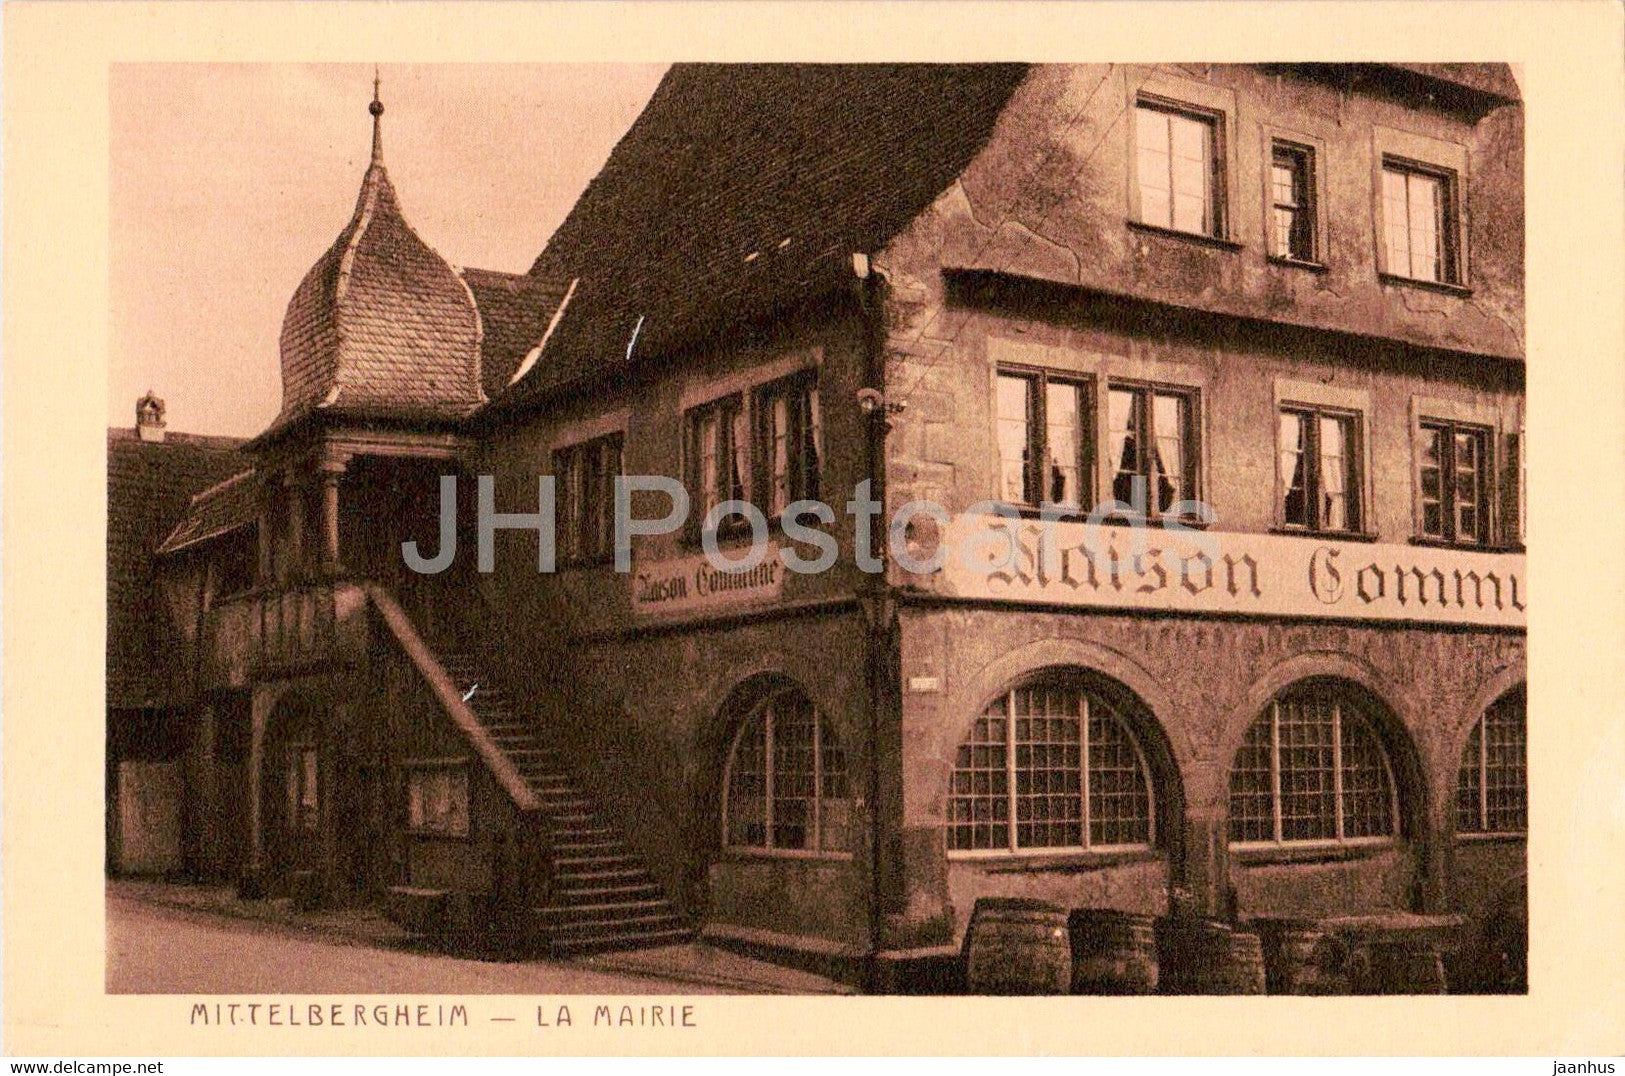 Mittelbergheim - La Mairie - old postcard - France - unused - JH Postcards